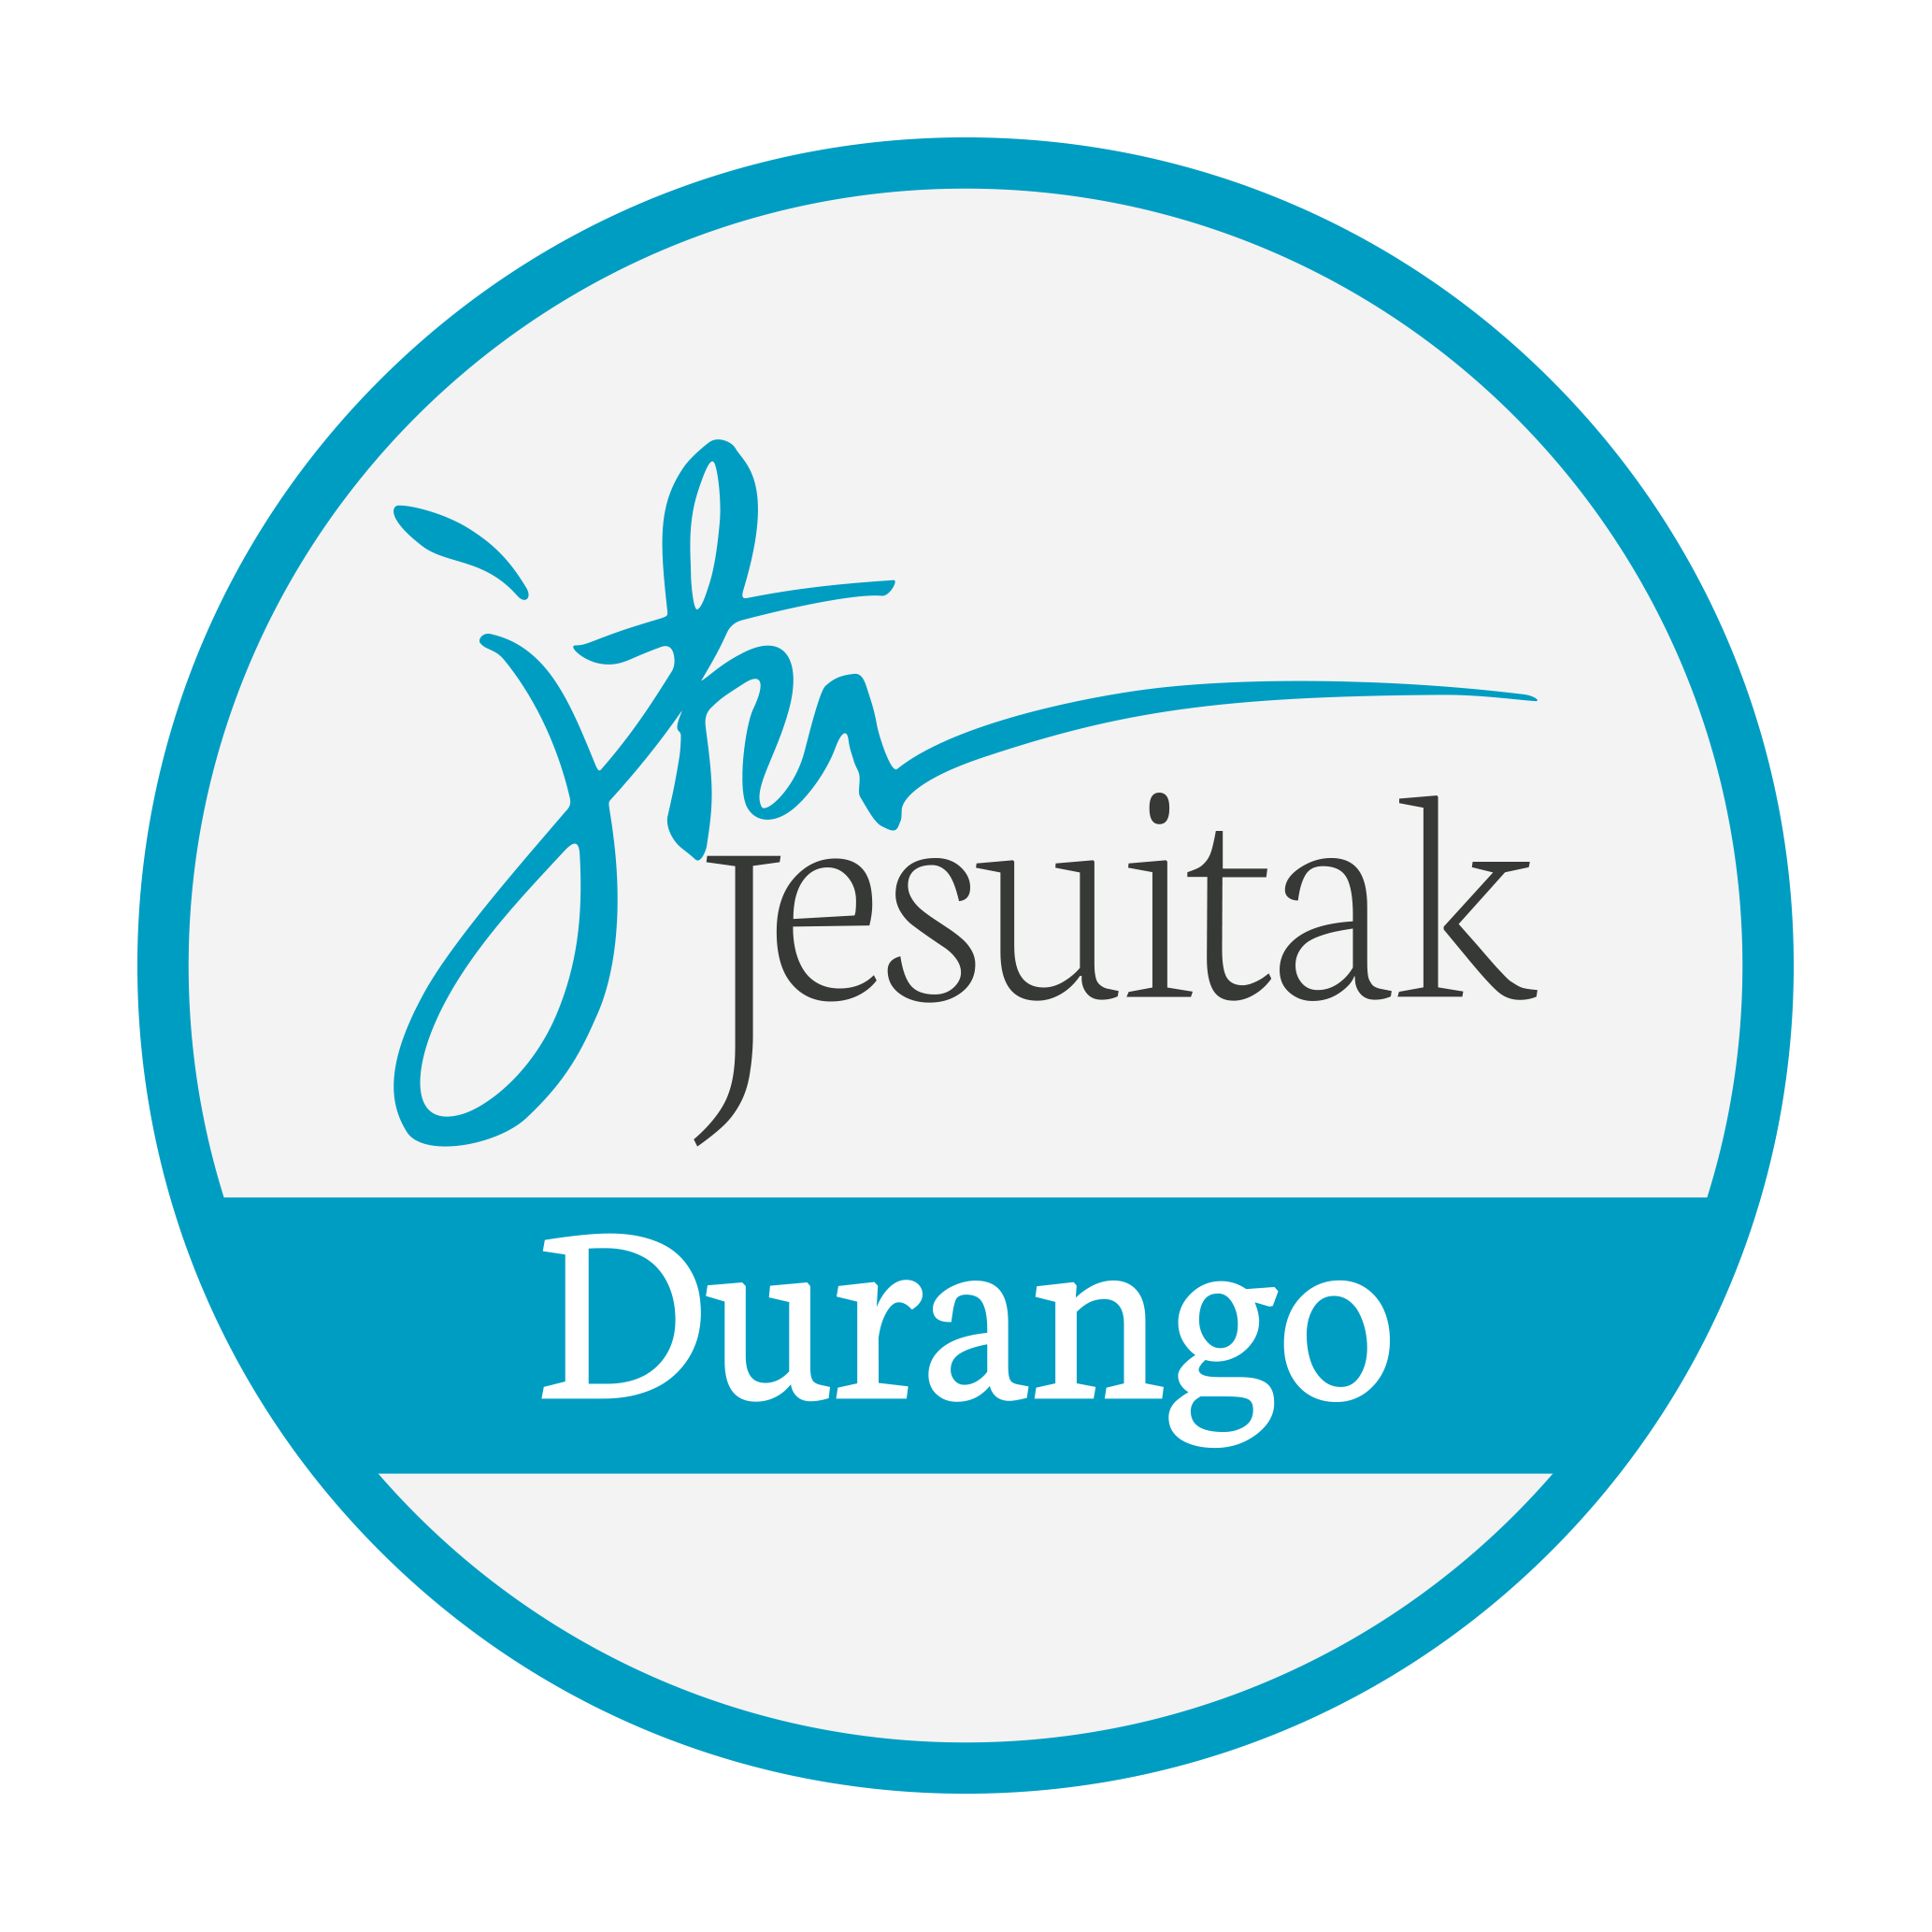 Jeusitak Durango